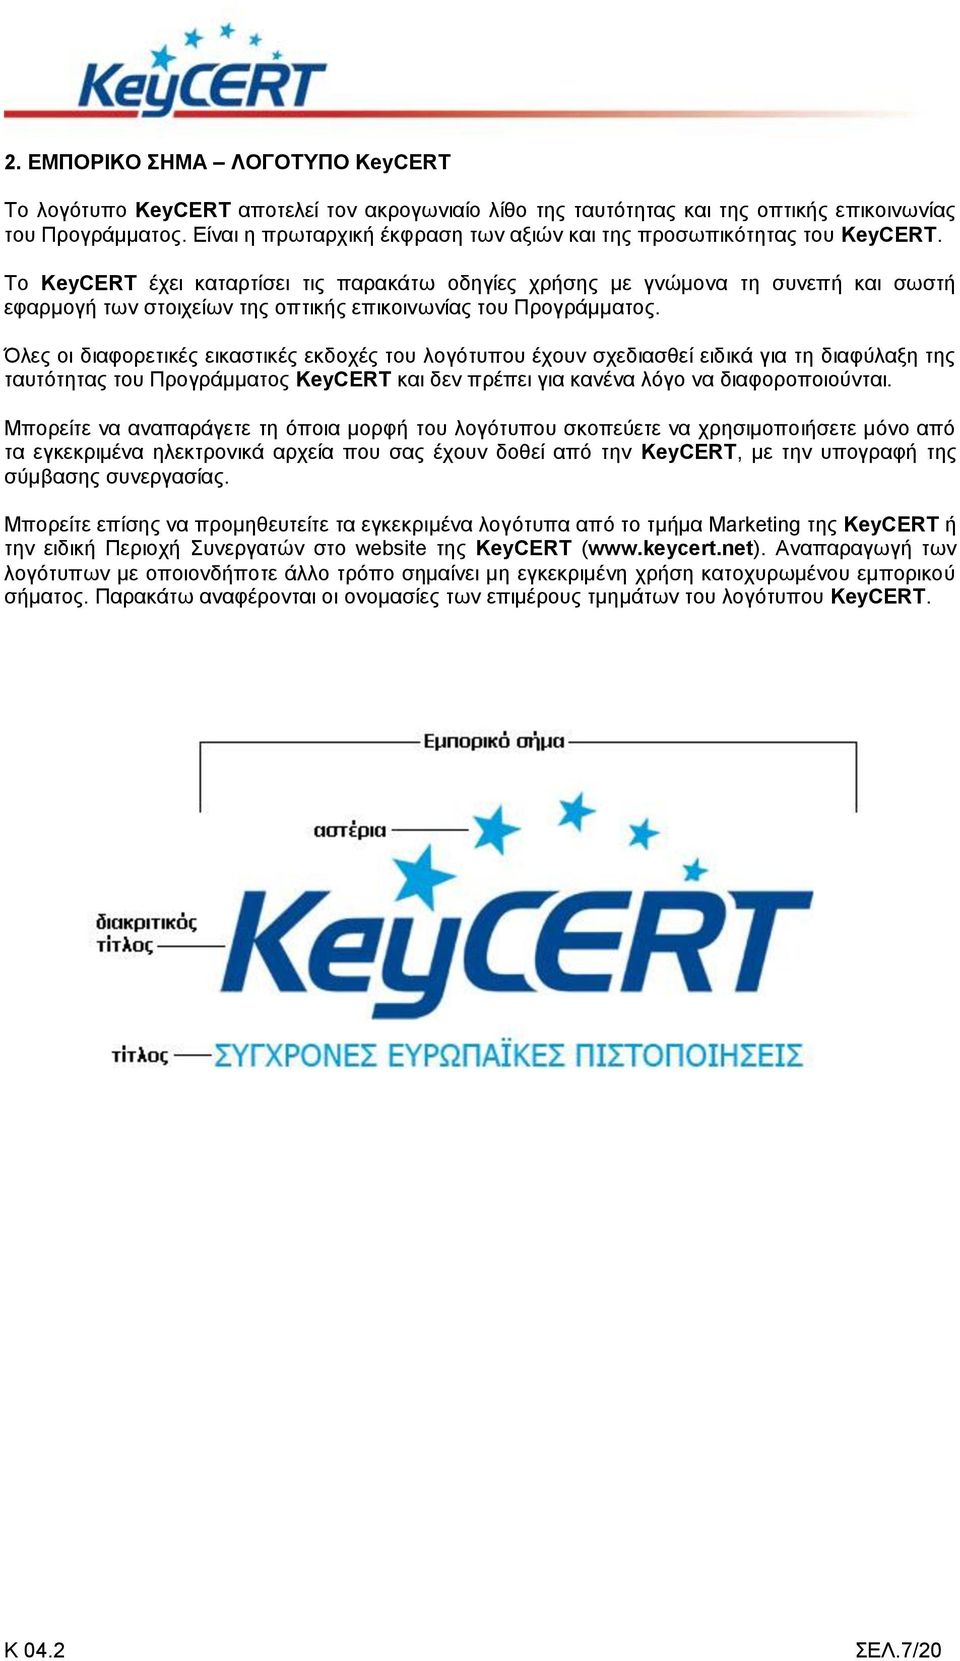 Το KeyCERT έχει καταρτίσει τις παρακάτω οδηγίες χρήσης με γνώμονα τη συνεπή και σωστή εφαρμογή των στοιχείων της οπτικής επικοινωνίας του Προγράμματος.